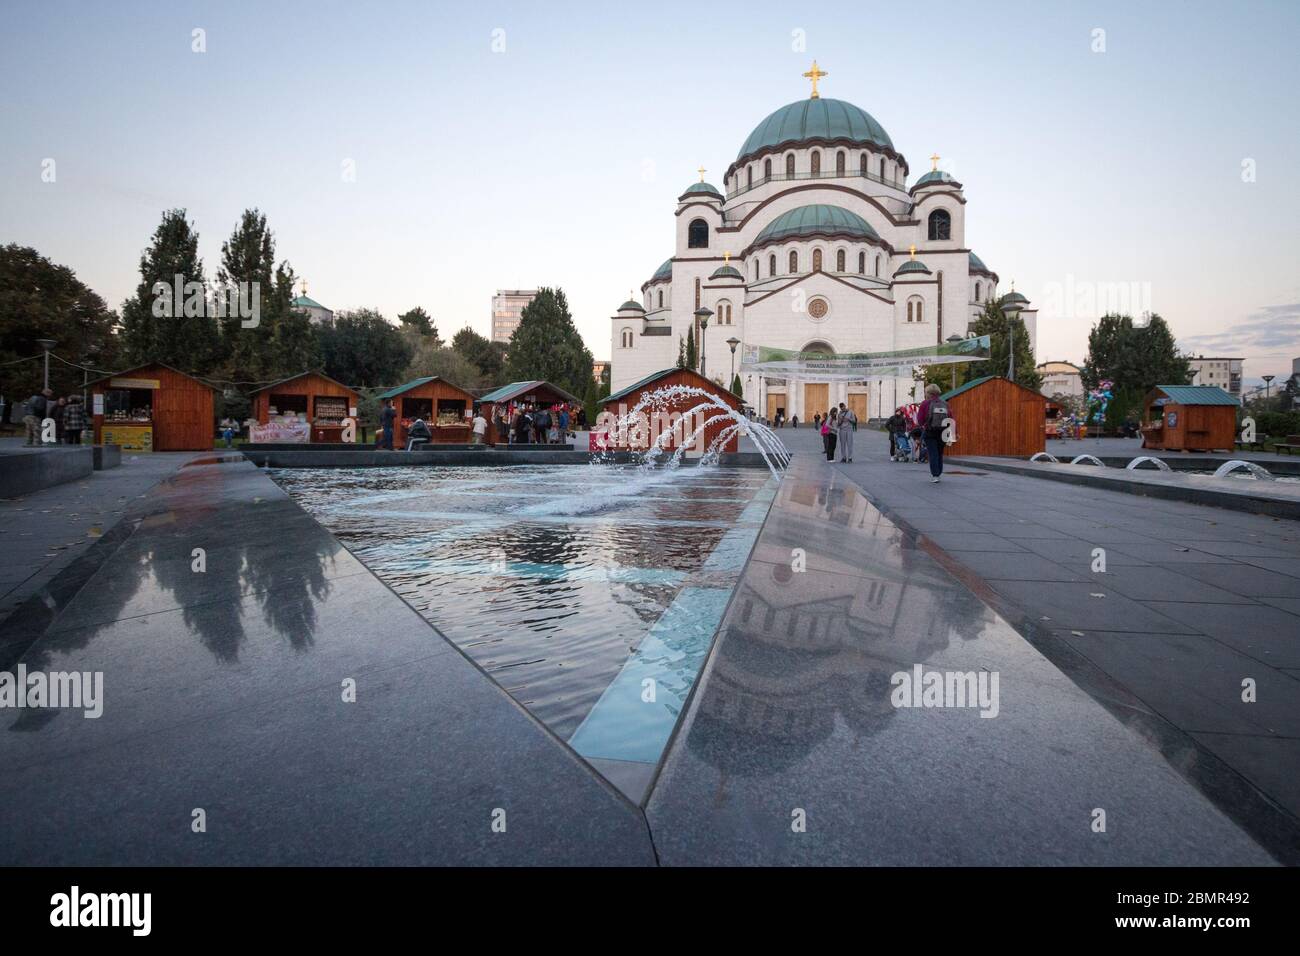 BELGRADO, SERBIA - 9 OTTOBRE 2016: Tempio della Cattedrale di San Sava (Hram Svetog Save) al crepuscolo. Questa chiesa ortodossa serba è uno dei monumenti principali Foto Stock